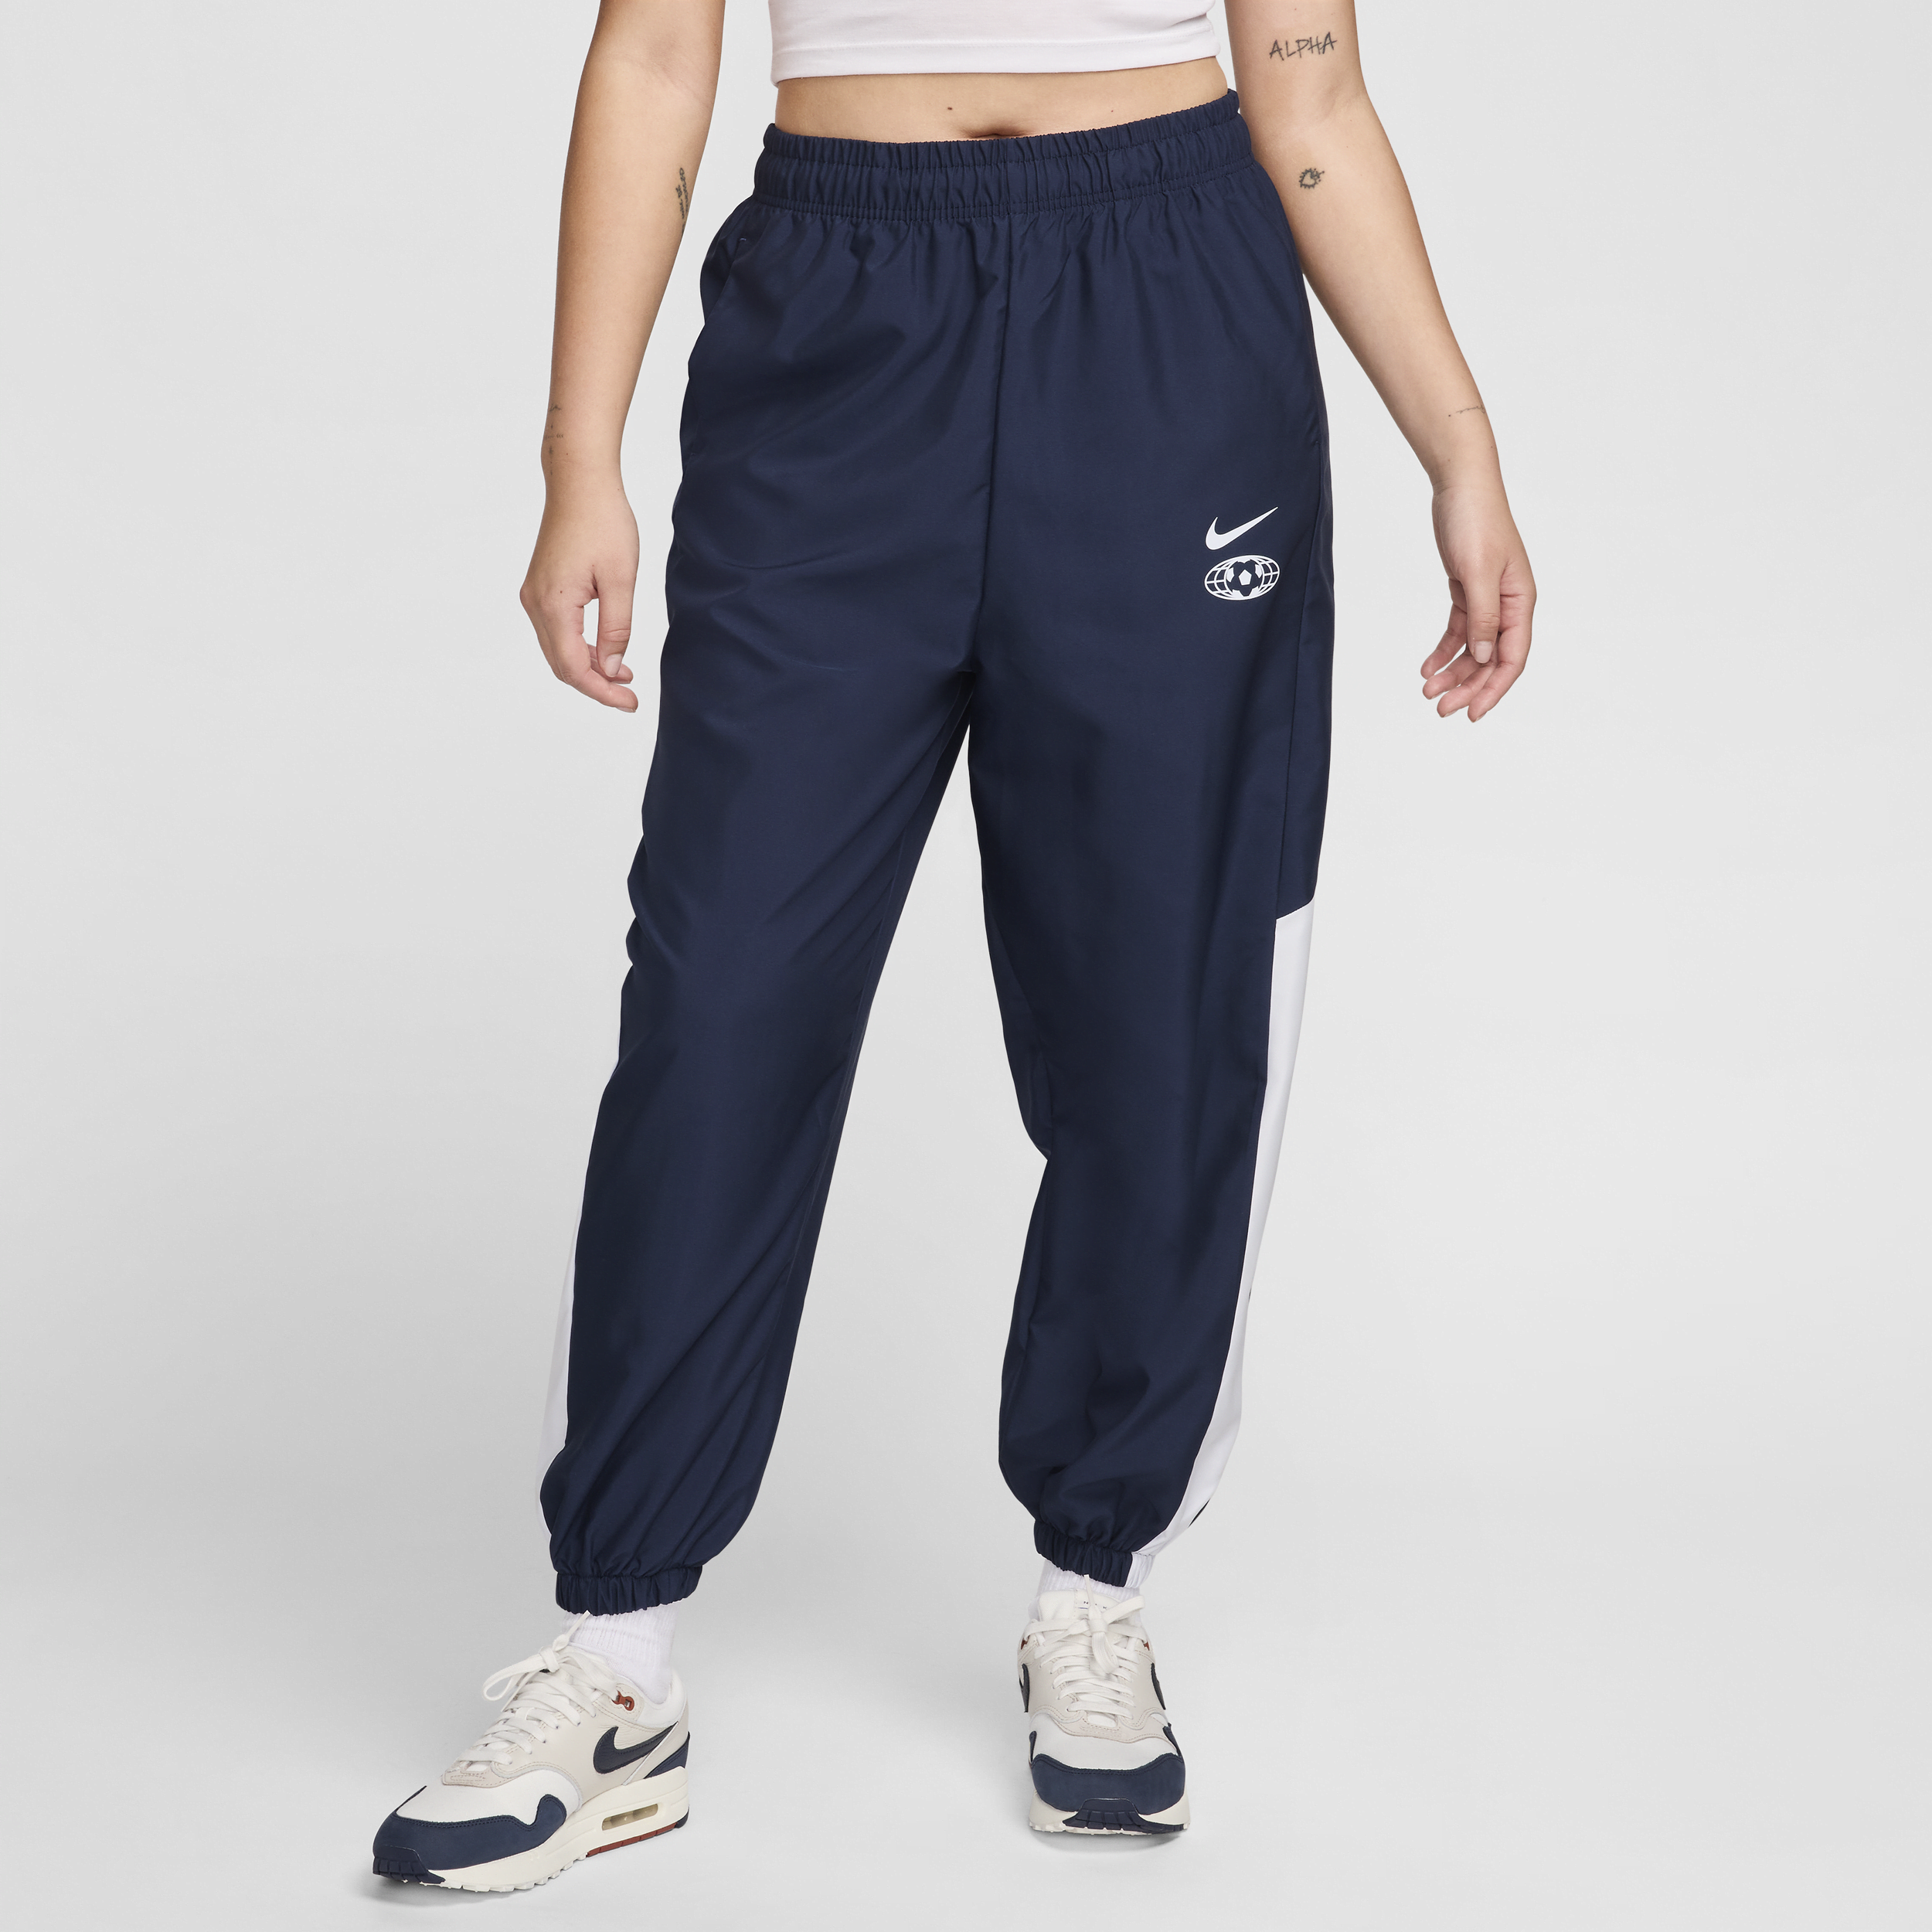 Vævede Nike Sportswear-joggers til kvinder - blå